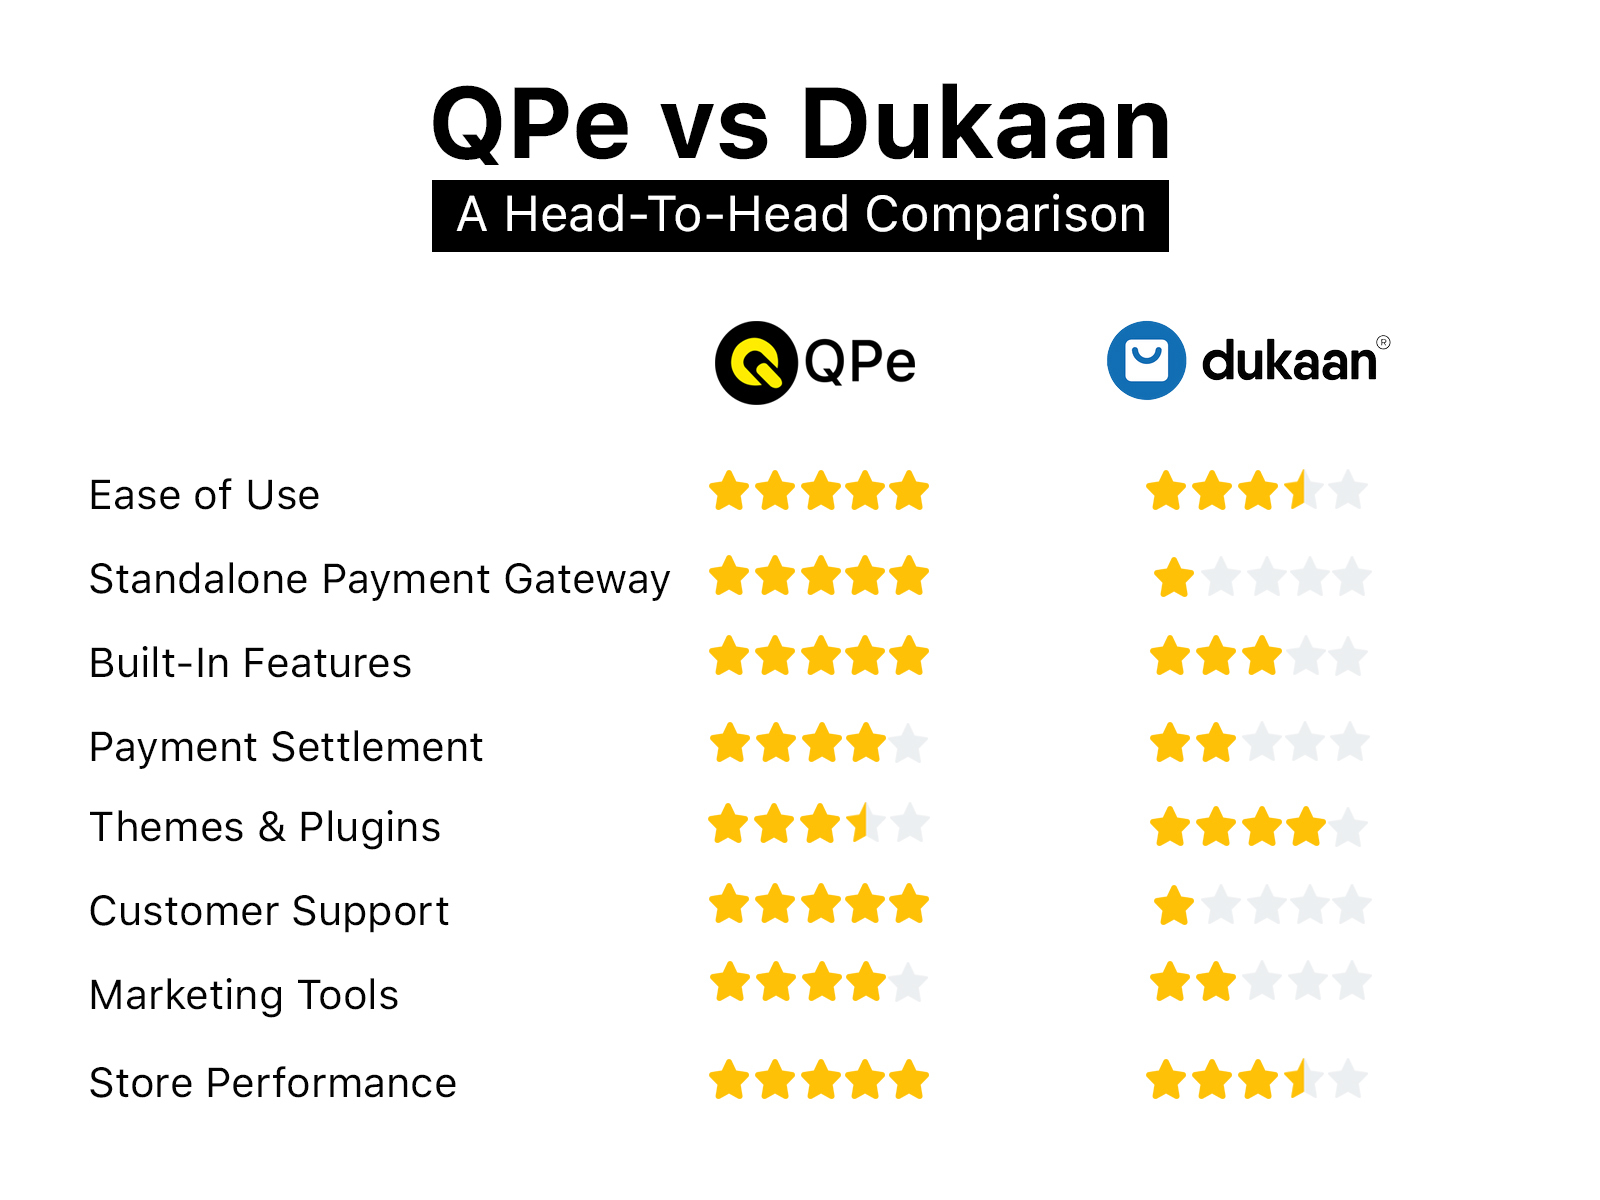 Dukaan vs QPe (Best Ecommerce Platforms Comparison)